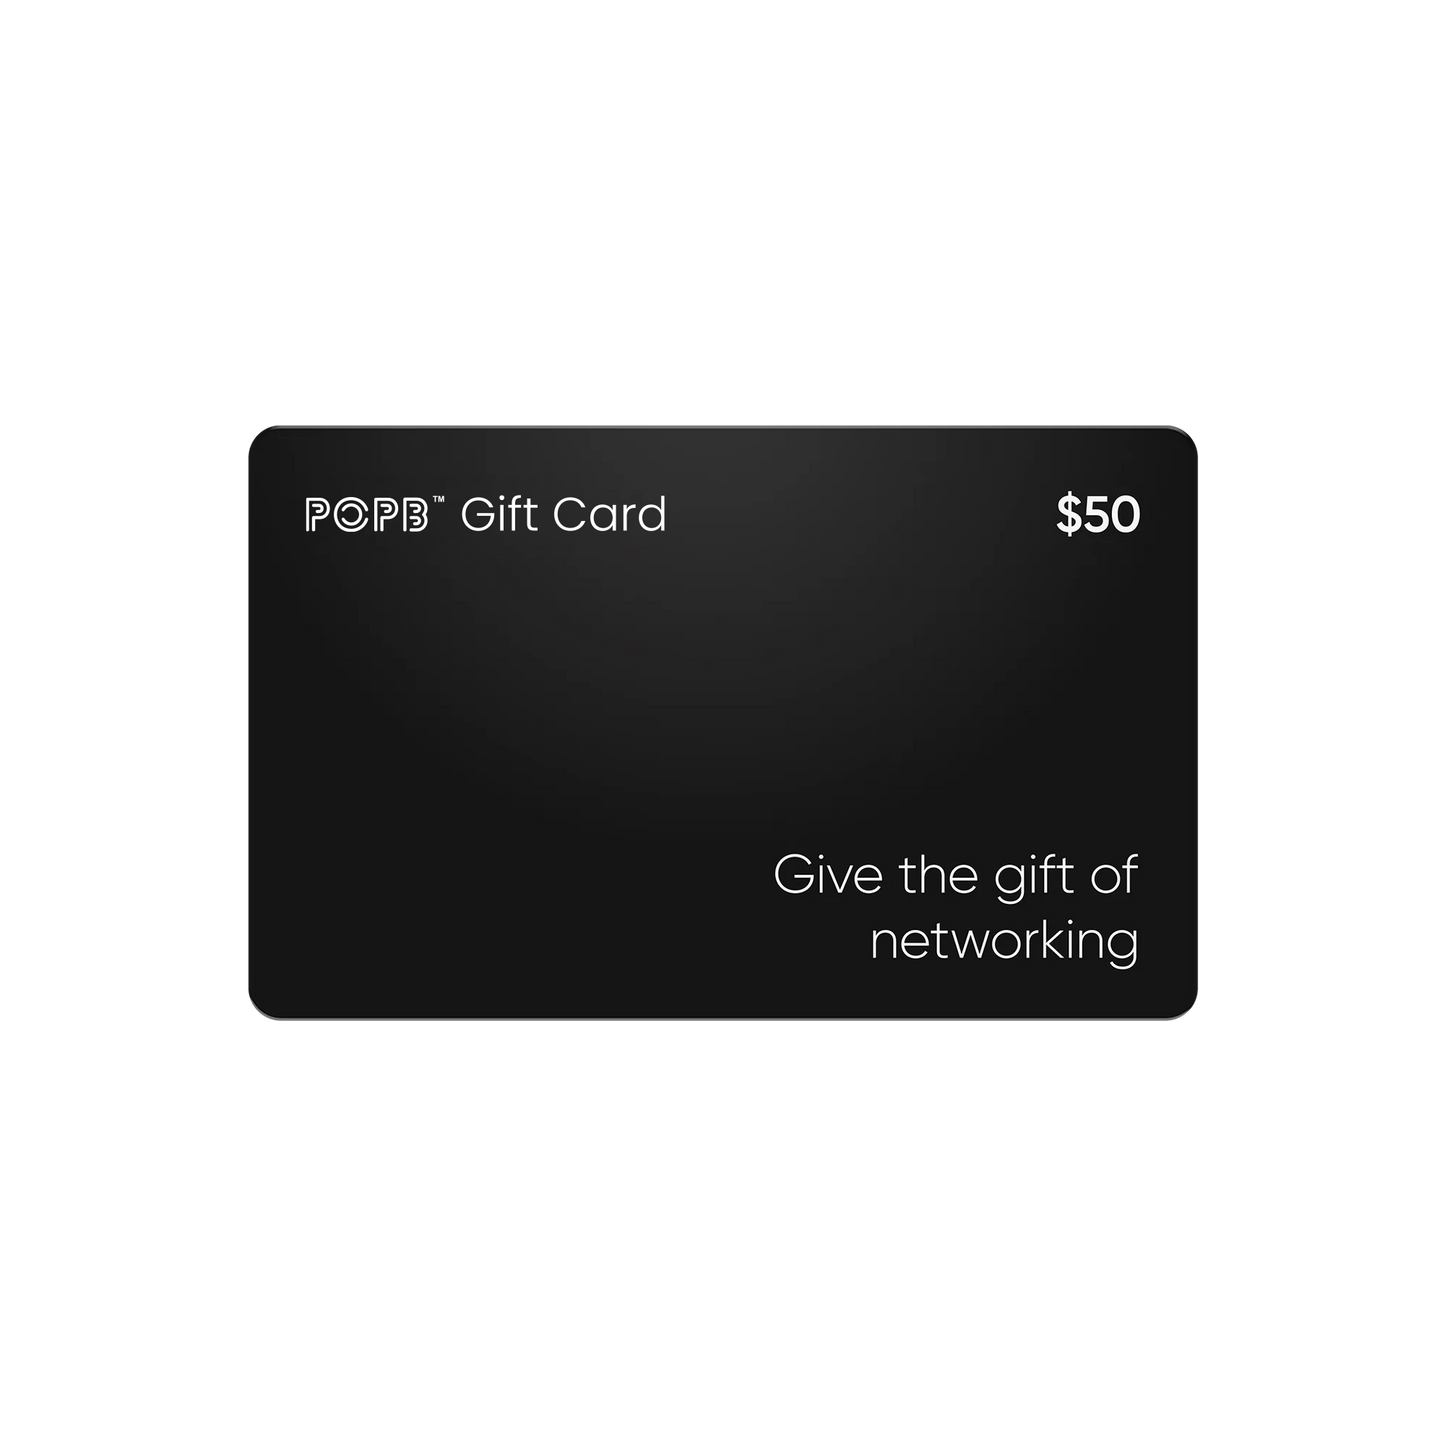 POPB Gift Card